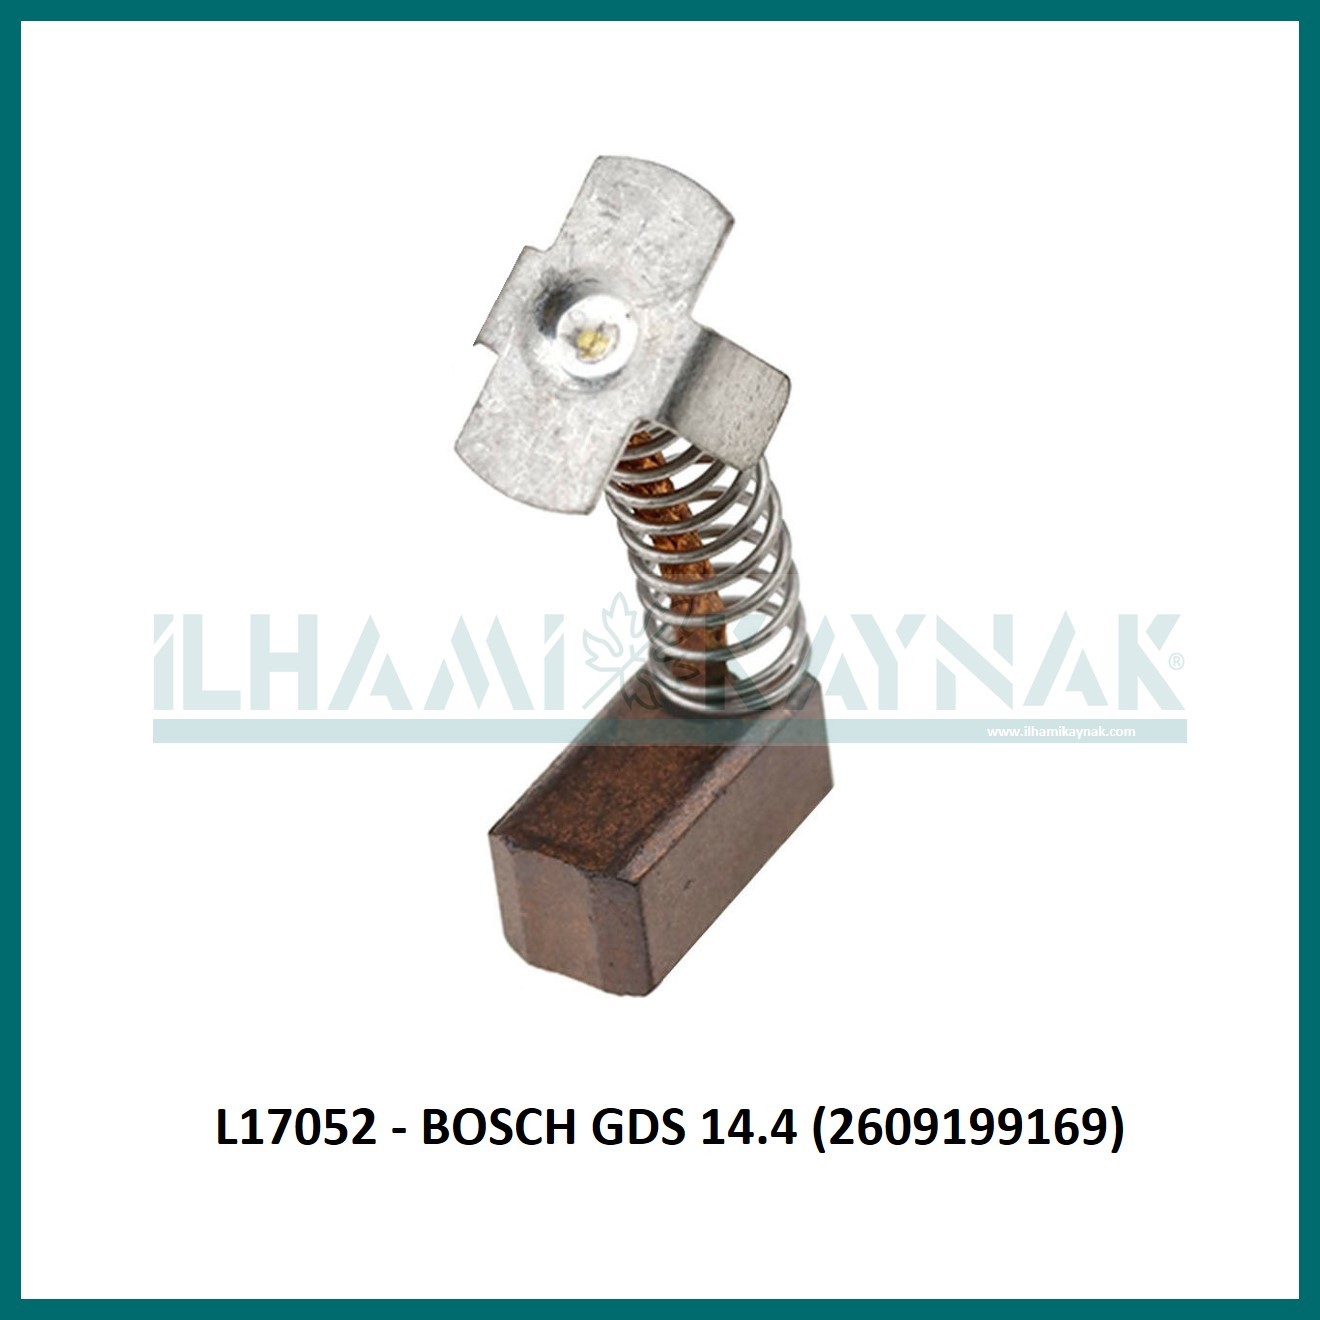 L17052 - BOSCH GDS 14.4 (2609199169) - 5.5*6.1*12 mm - 100 Adet